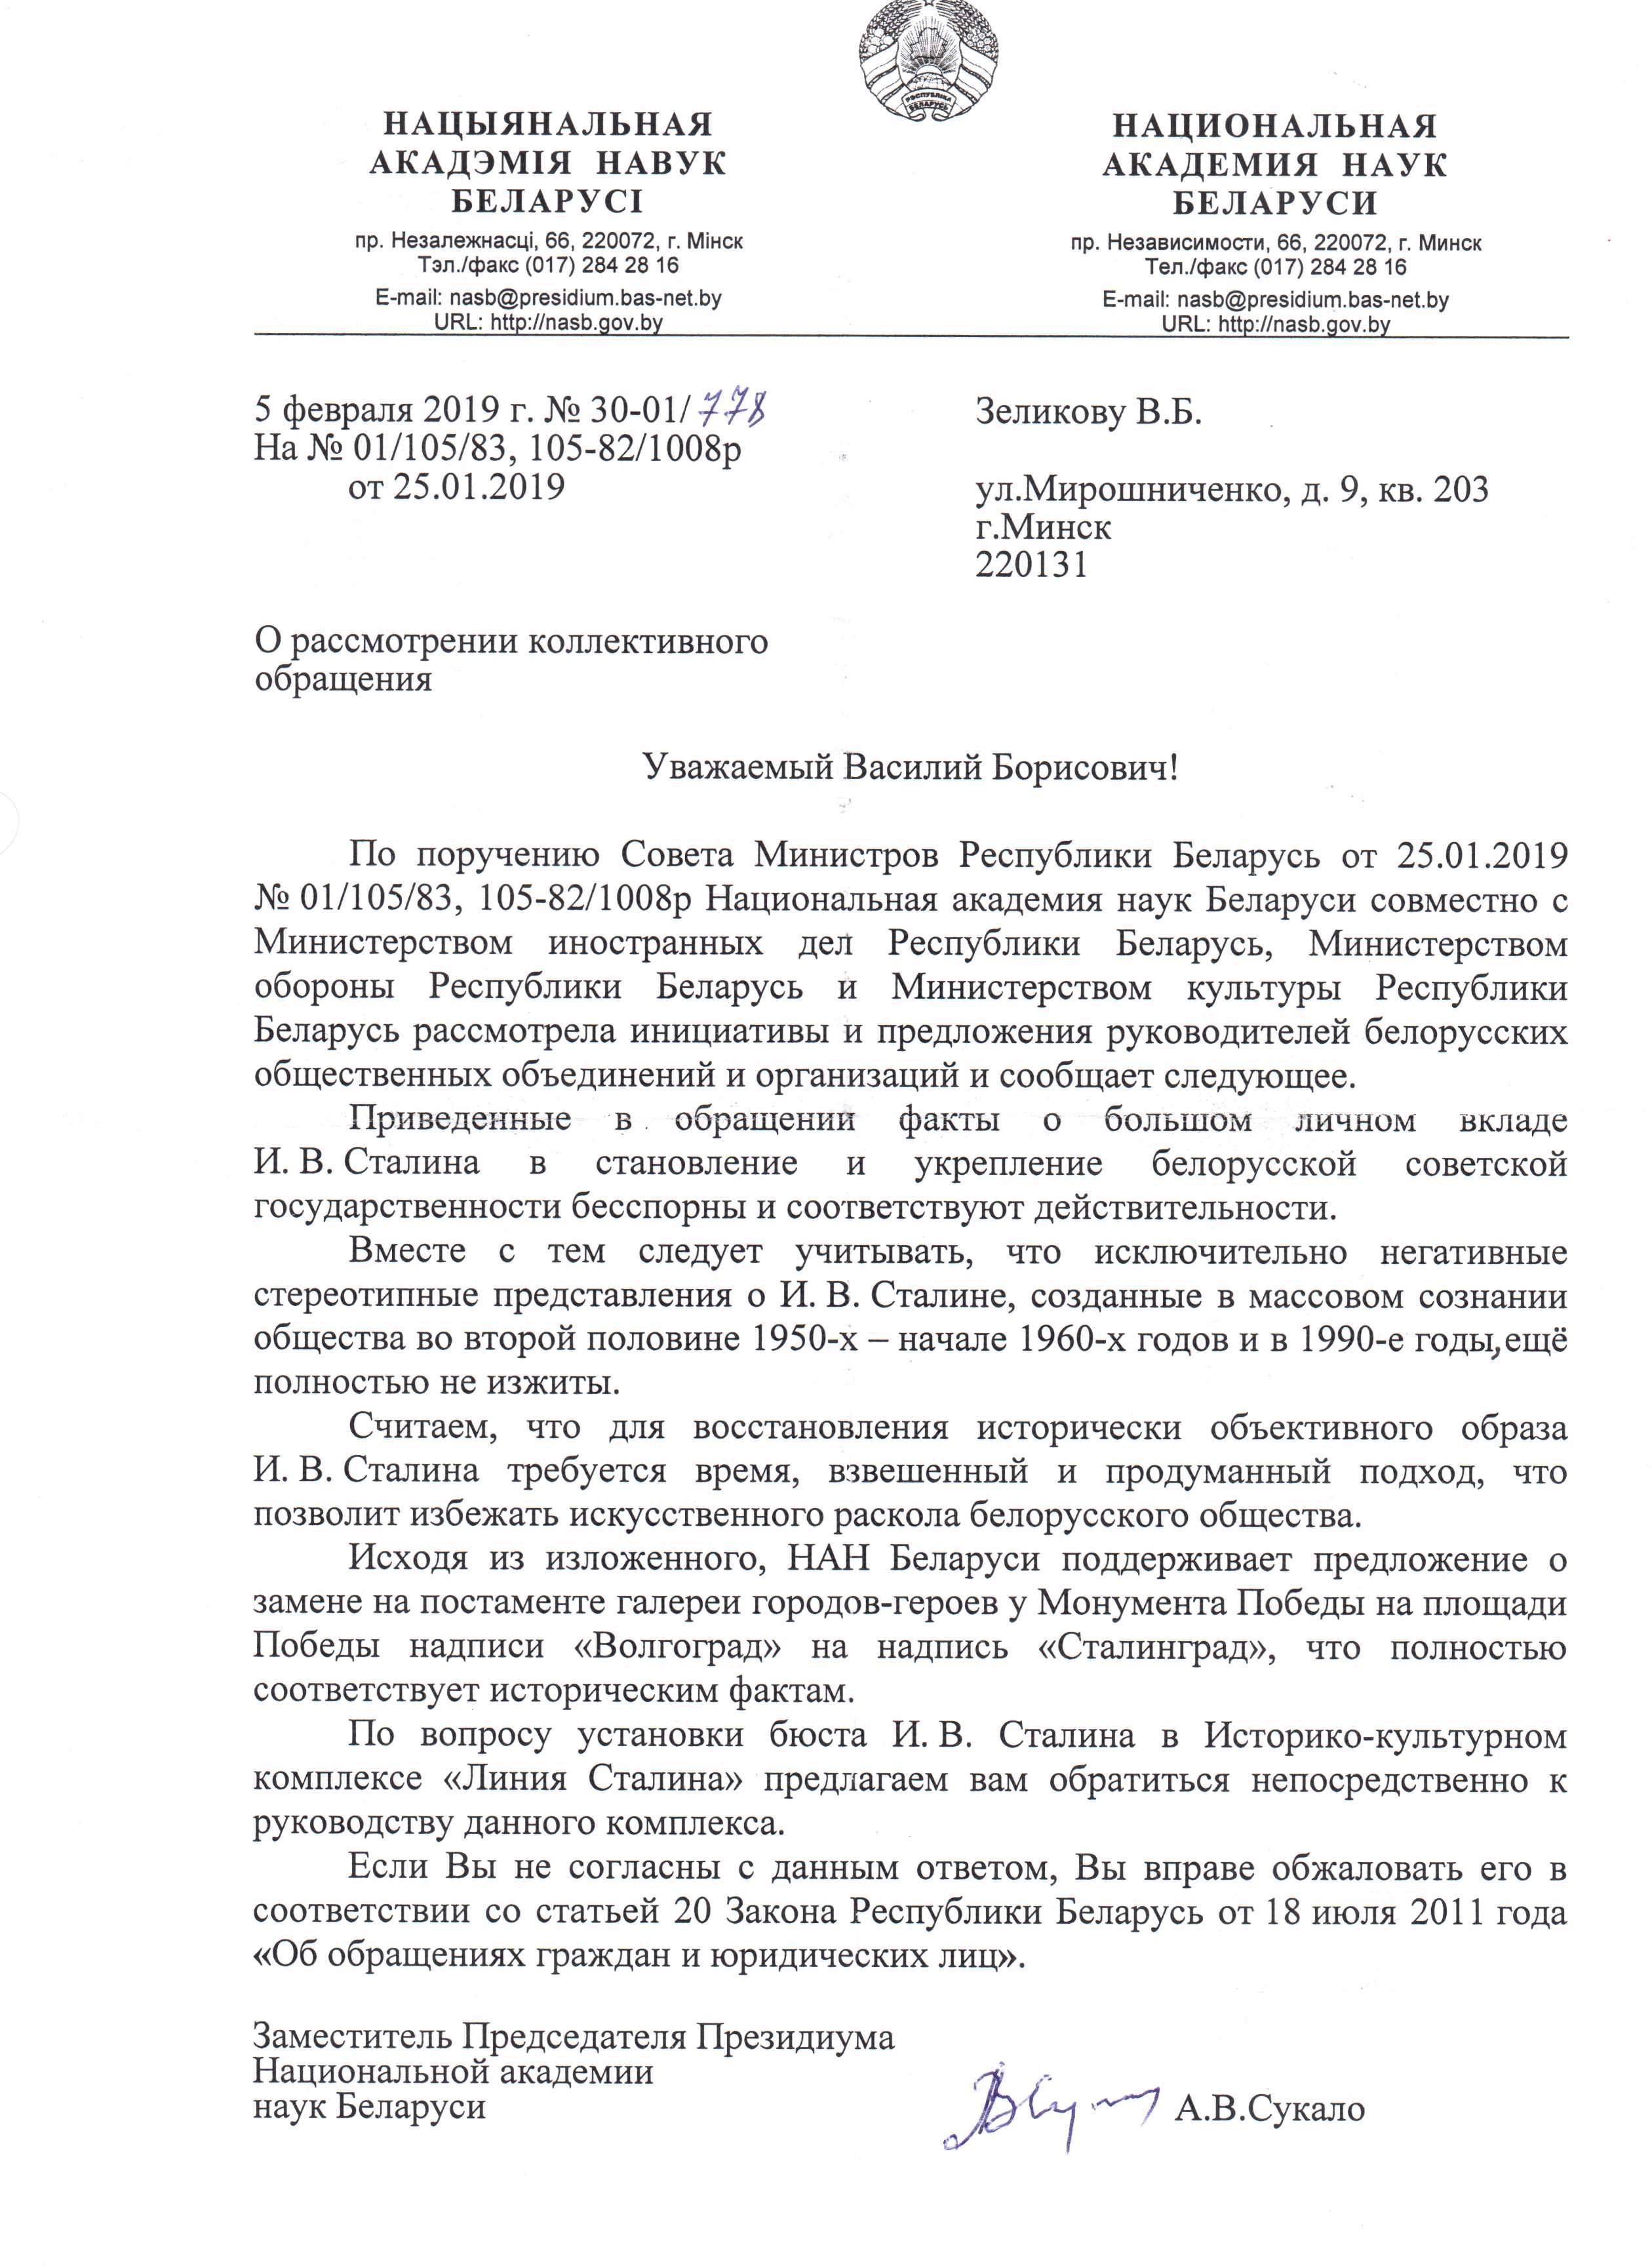 Ответ из НАН Респ. Беларусь и 3-х министерств РБ по И.В. Сталину